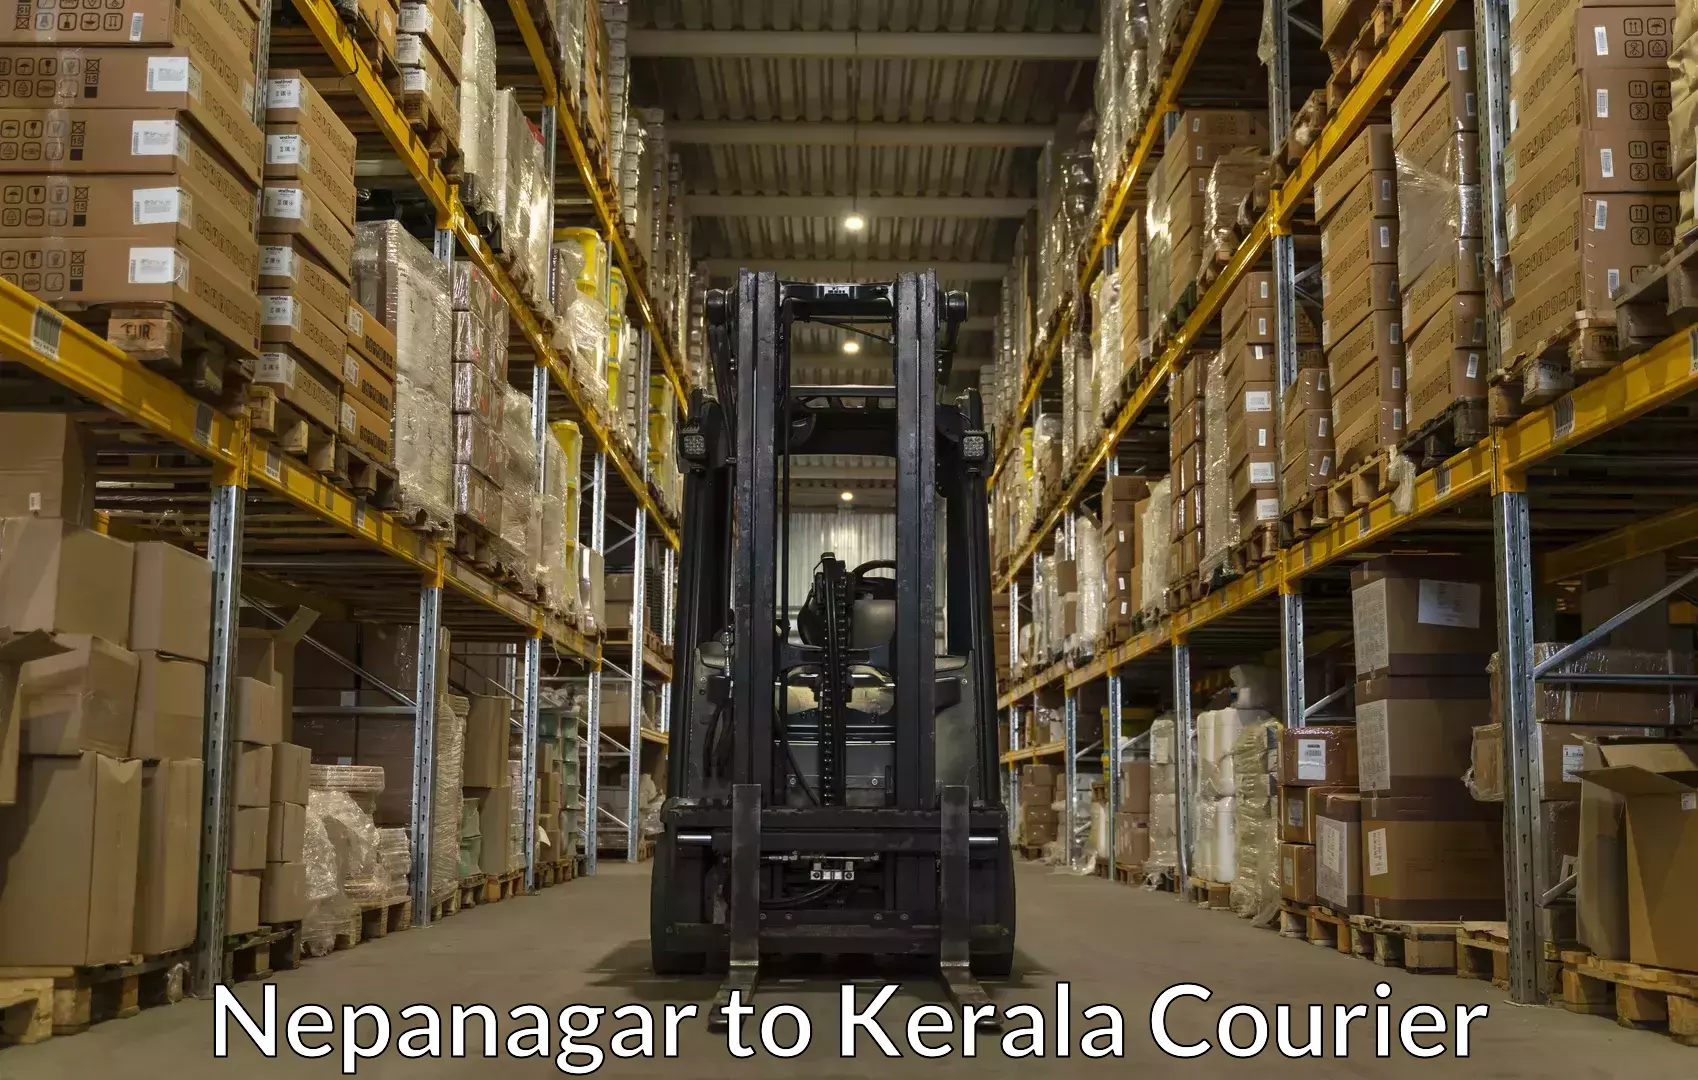 Luggage transfer service Nepanagar to Kerala